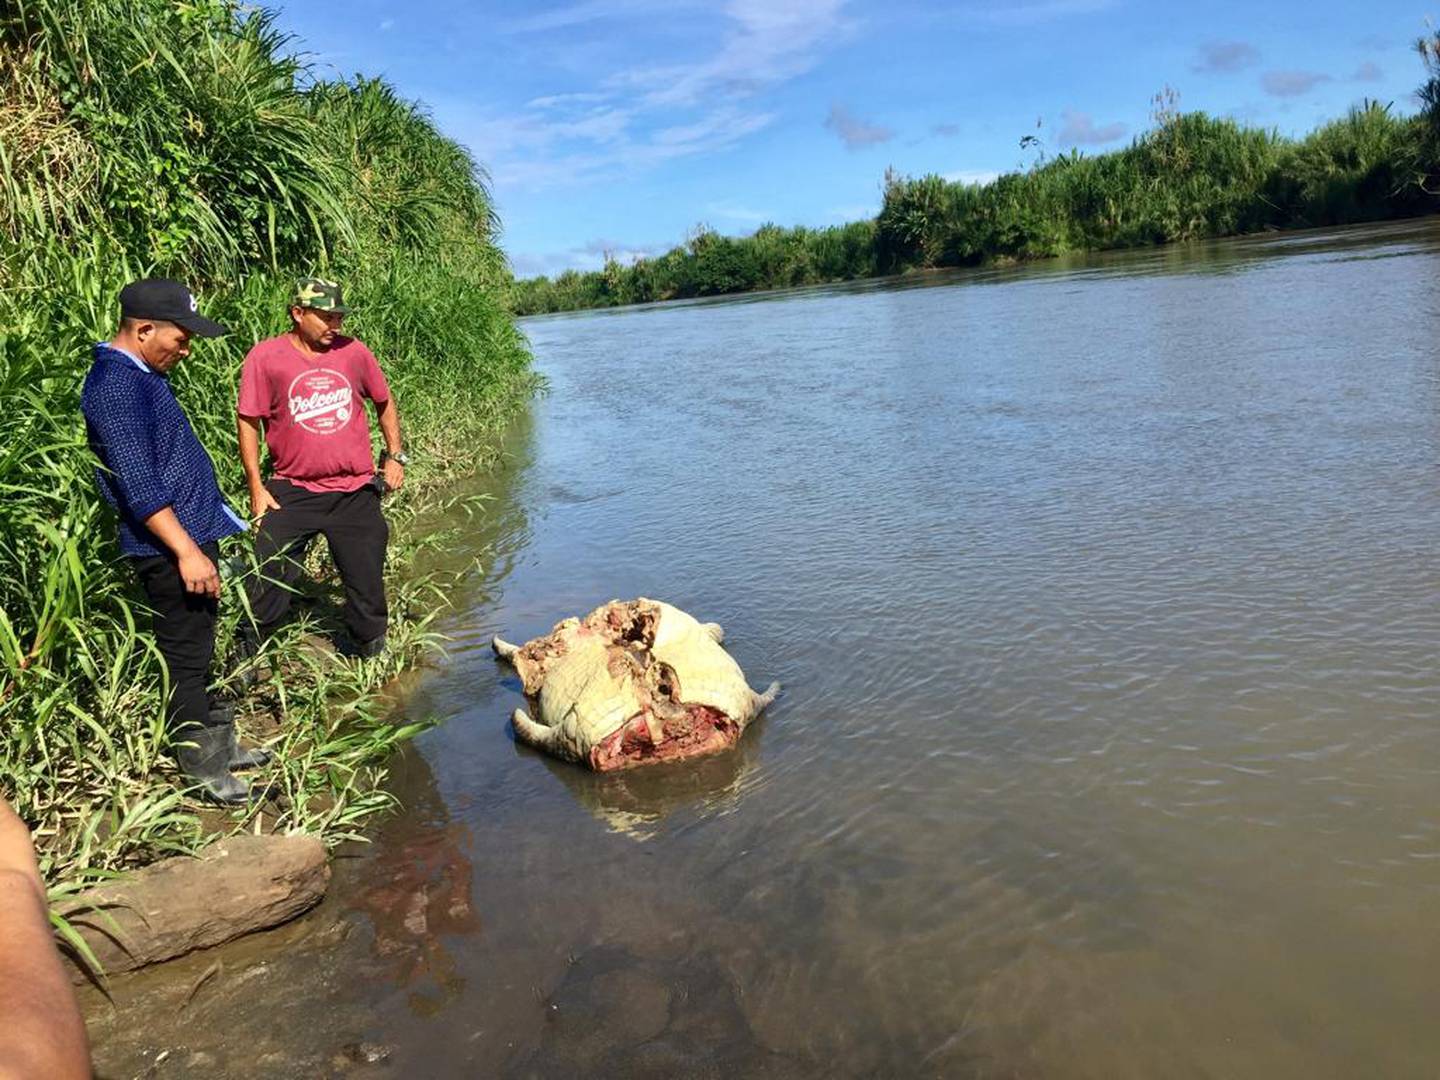 Los restos del animal sacrificado, que se presume atacó  y devoró al menor, fueron lanzados al río, una vez que se extrajeron huesos de su sistema digestivo. Foto: Raúl Cascante.